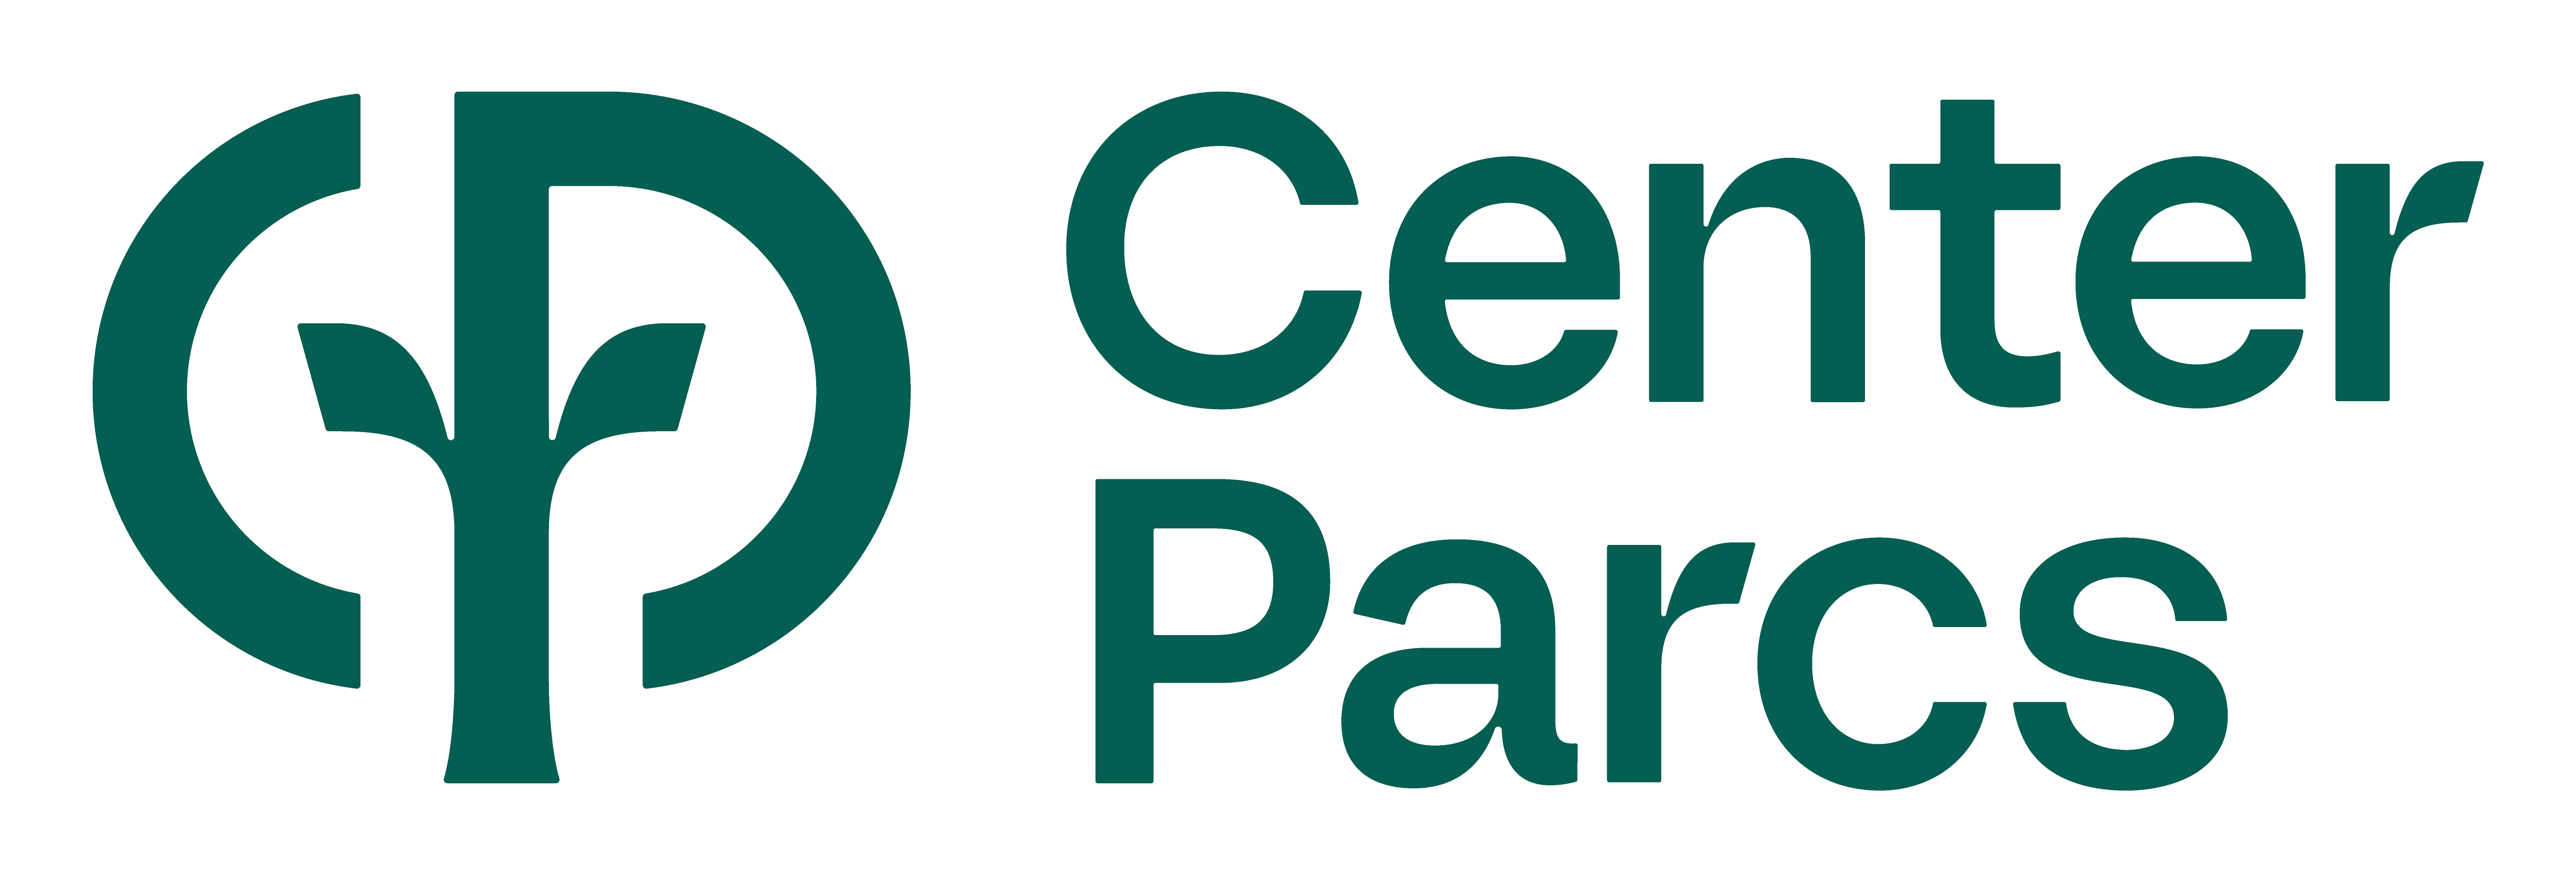 center-parcs-cp_secondary_logo_pine_rgb_web